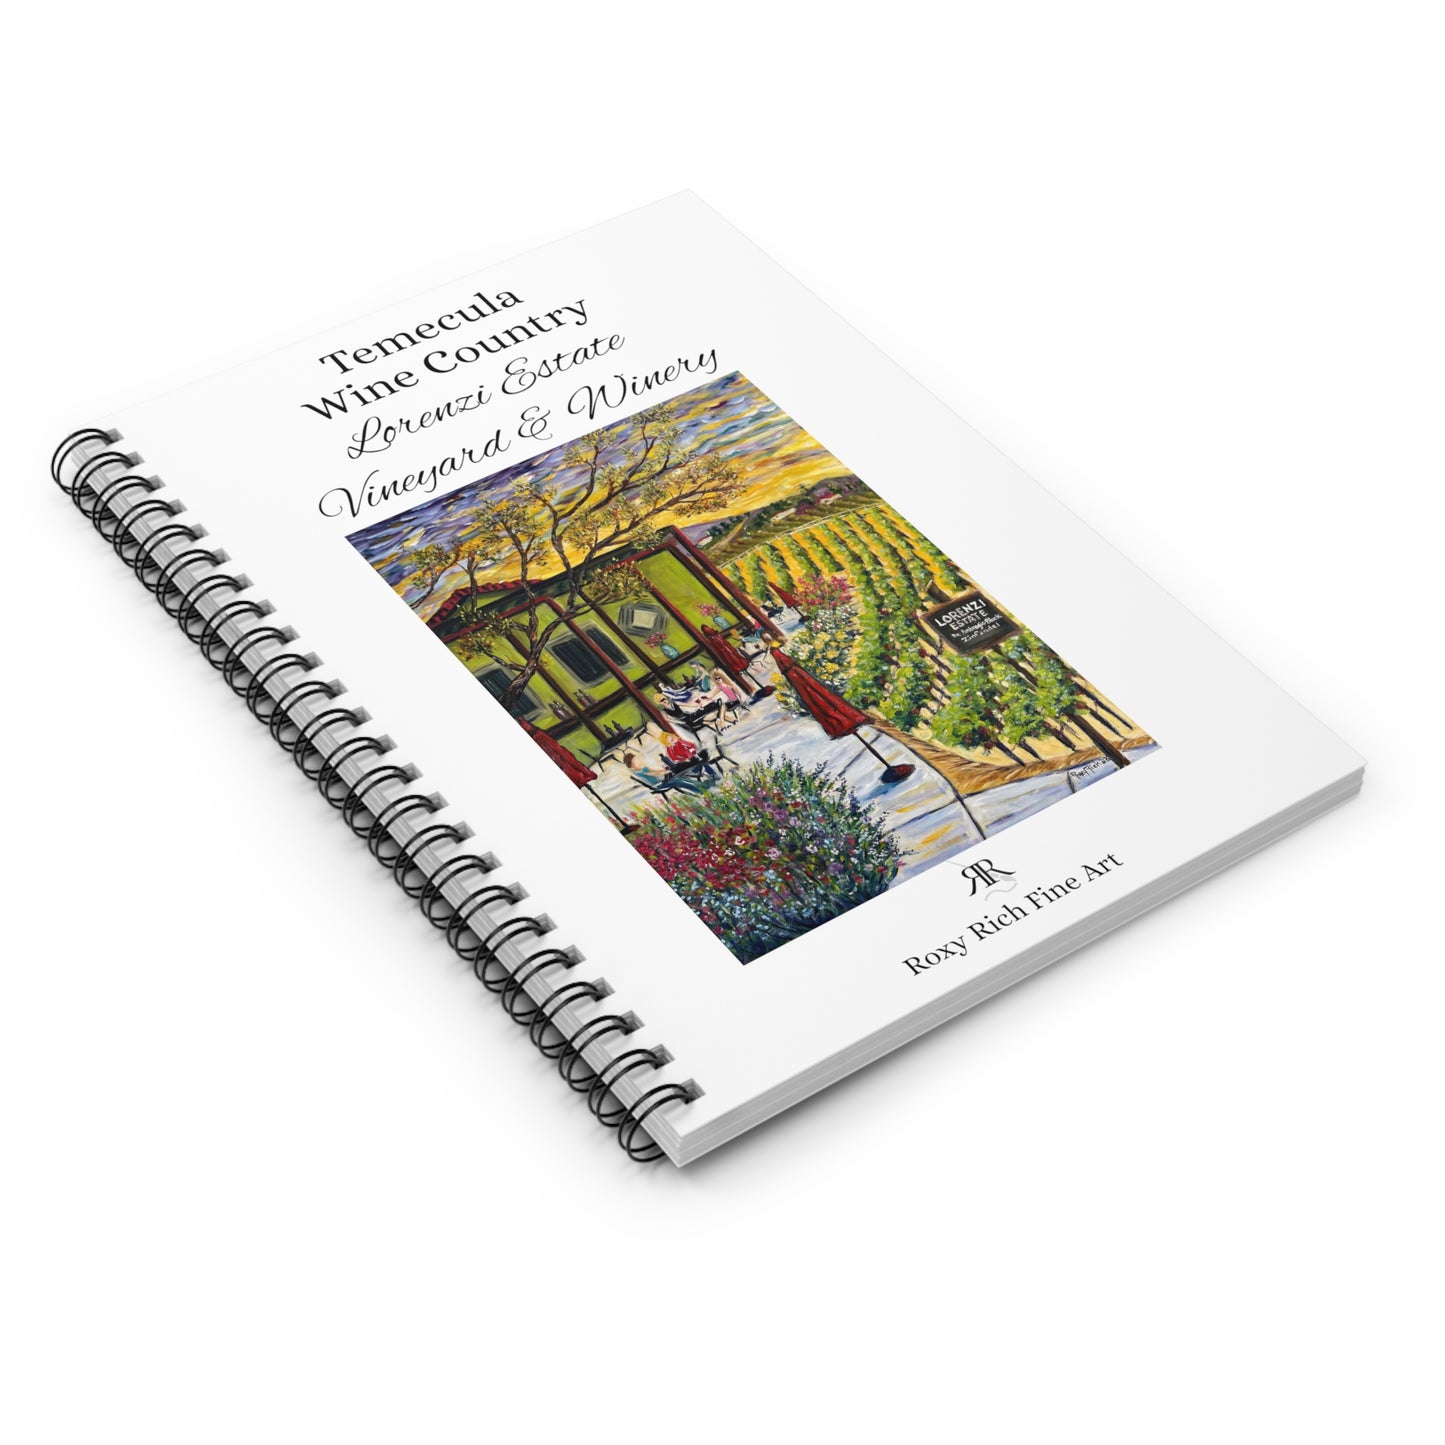 Región vinícola de Temecula "Terraza de la finca Lorenzi" Cuaderno de espiral